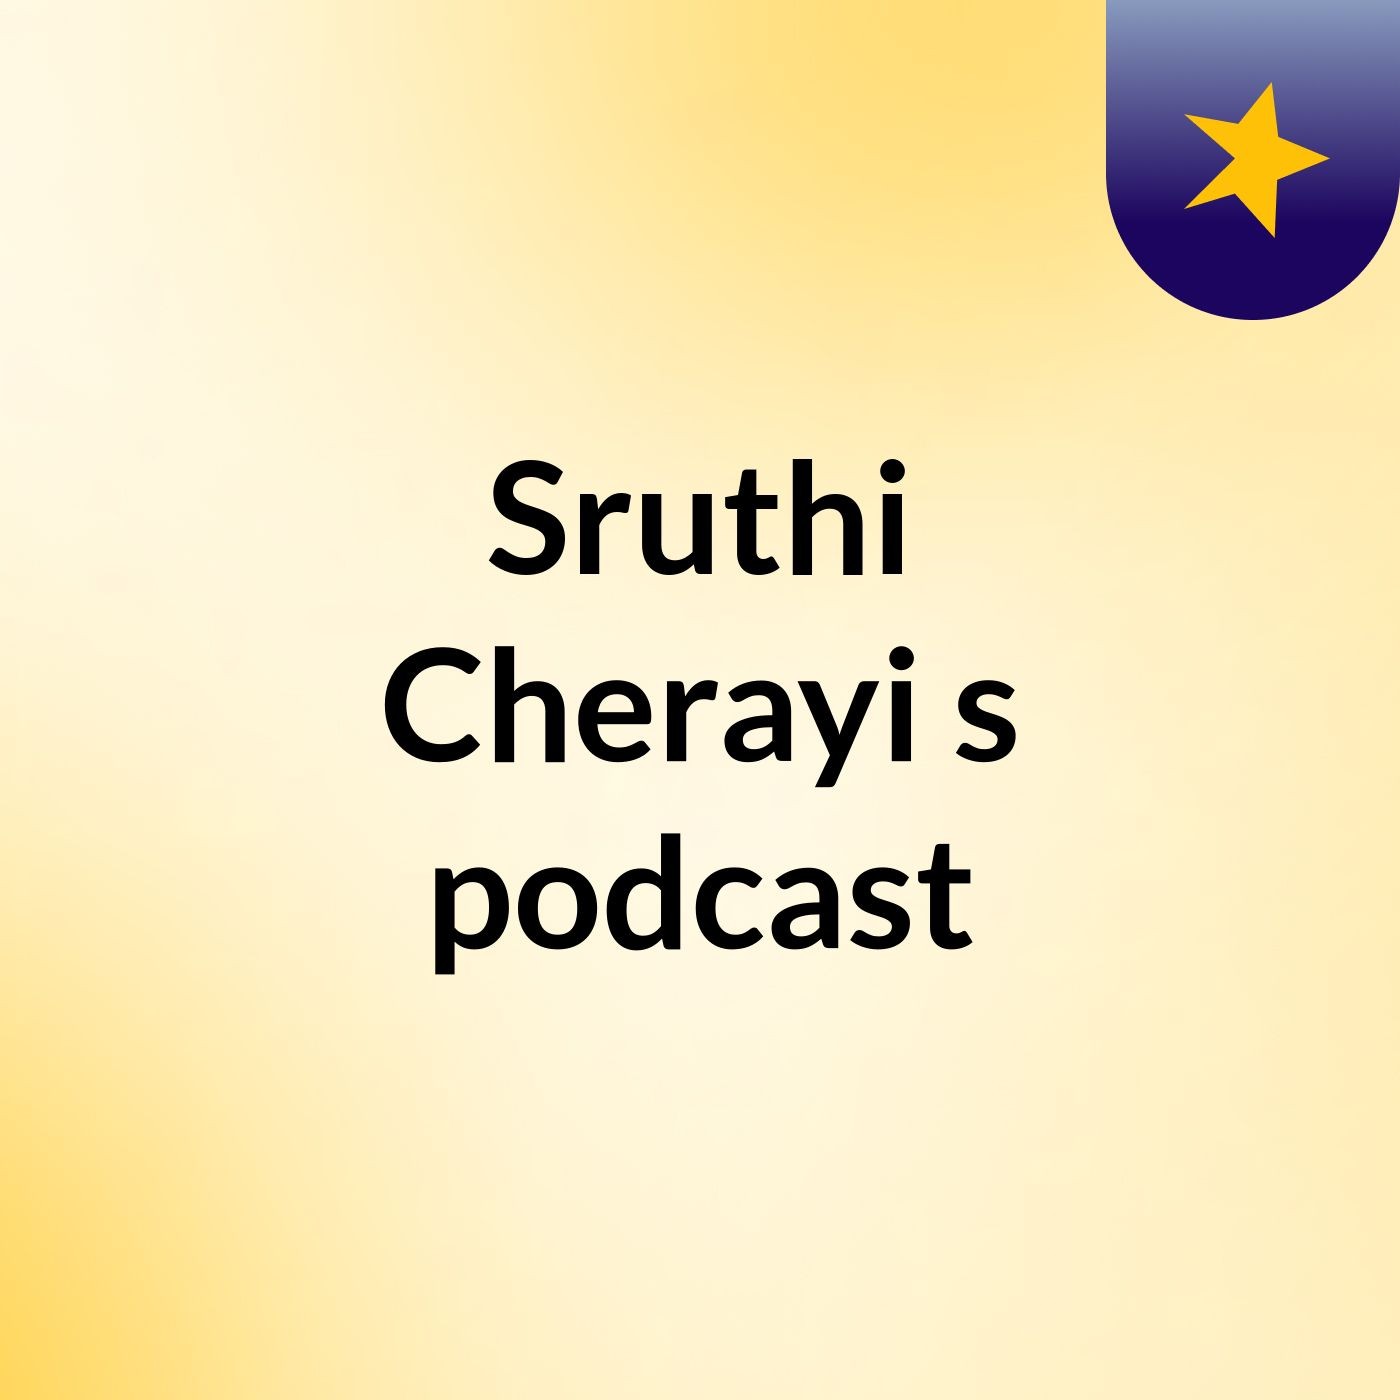 Sruthi Cherayi's podcast